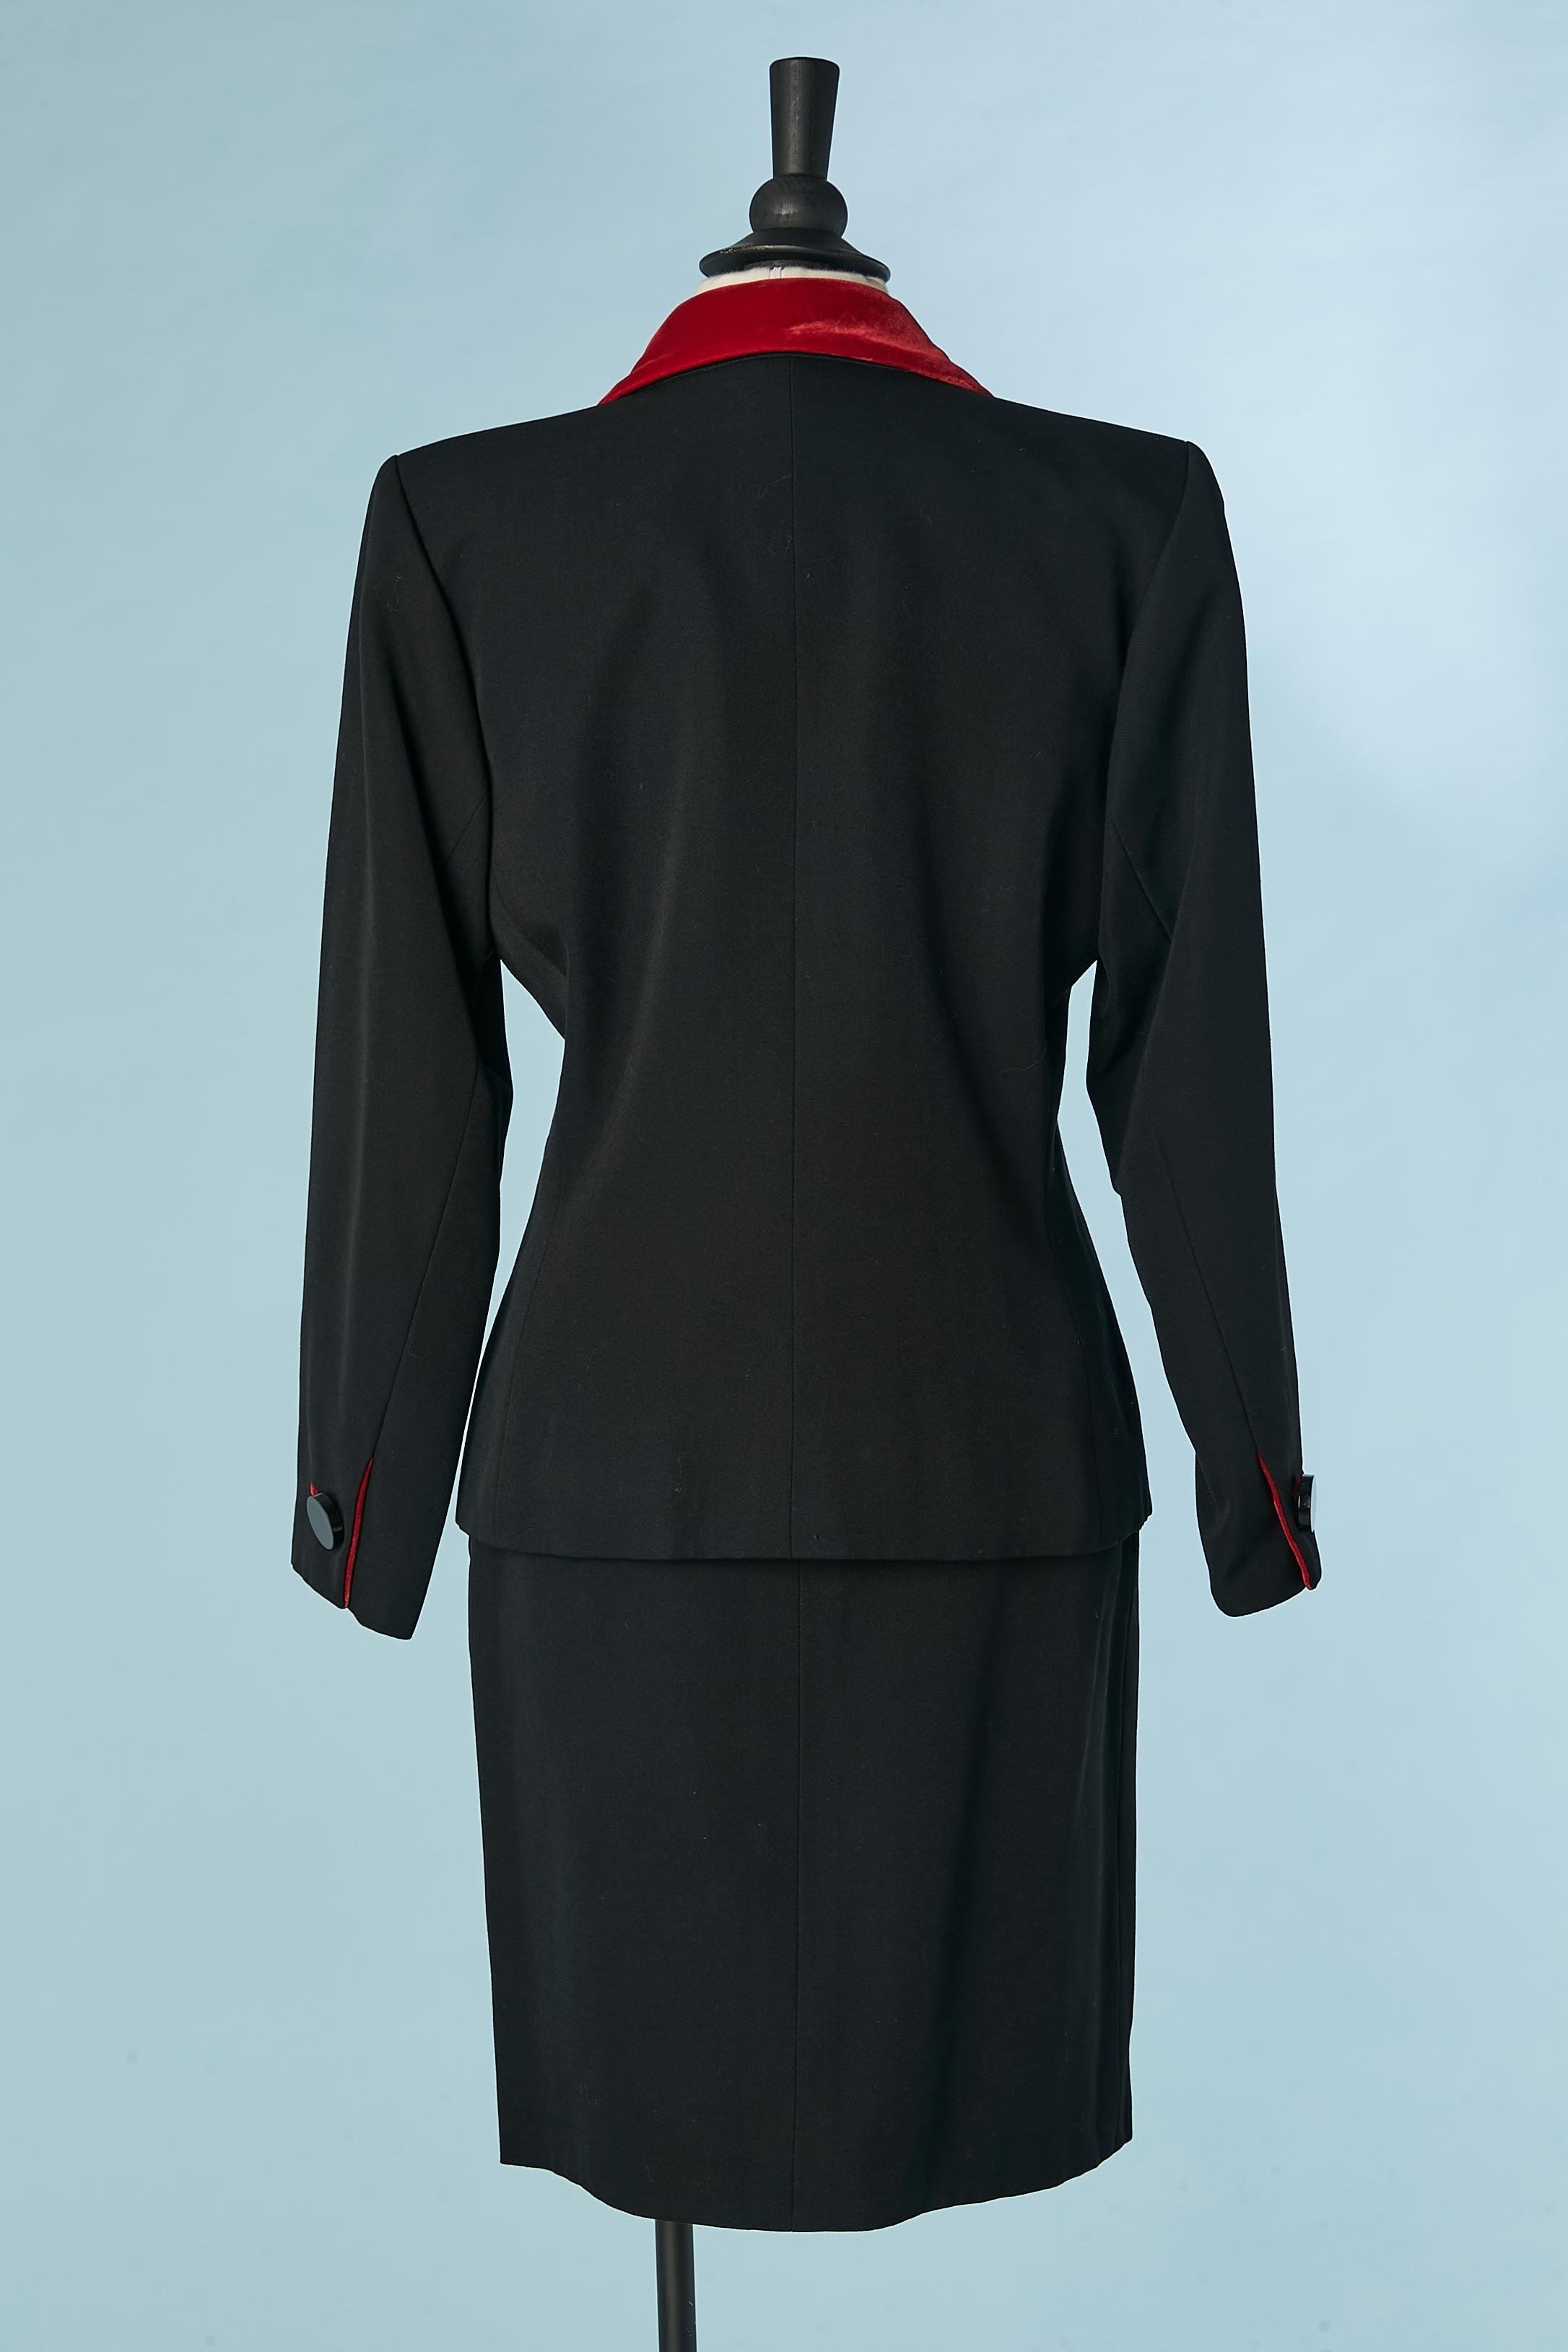 Black skirt-suit with red velvet details Yves Saint Laurent Rive Gauche 1980's  For Sale 3